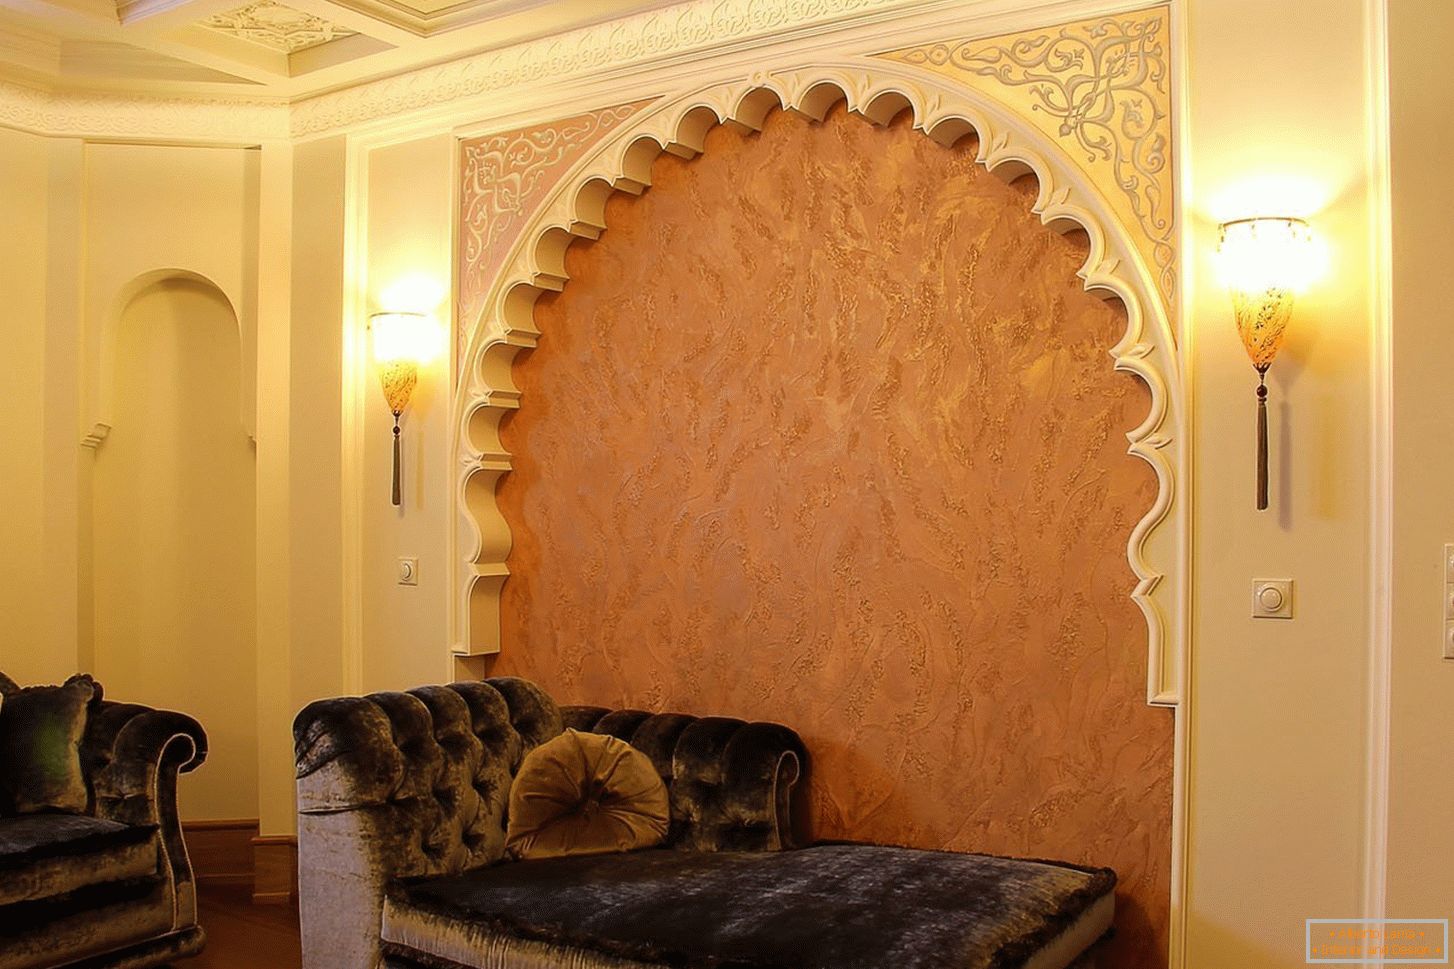 Zimmer im orientalischen Stil